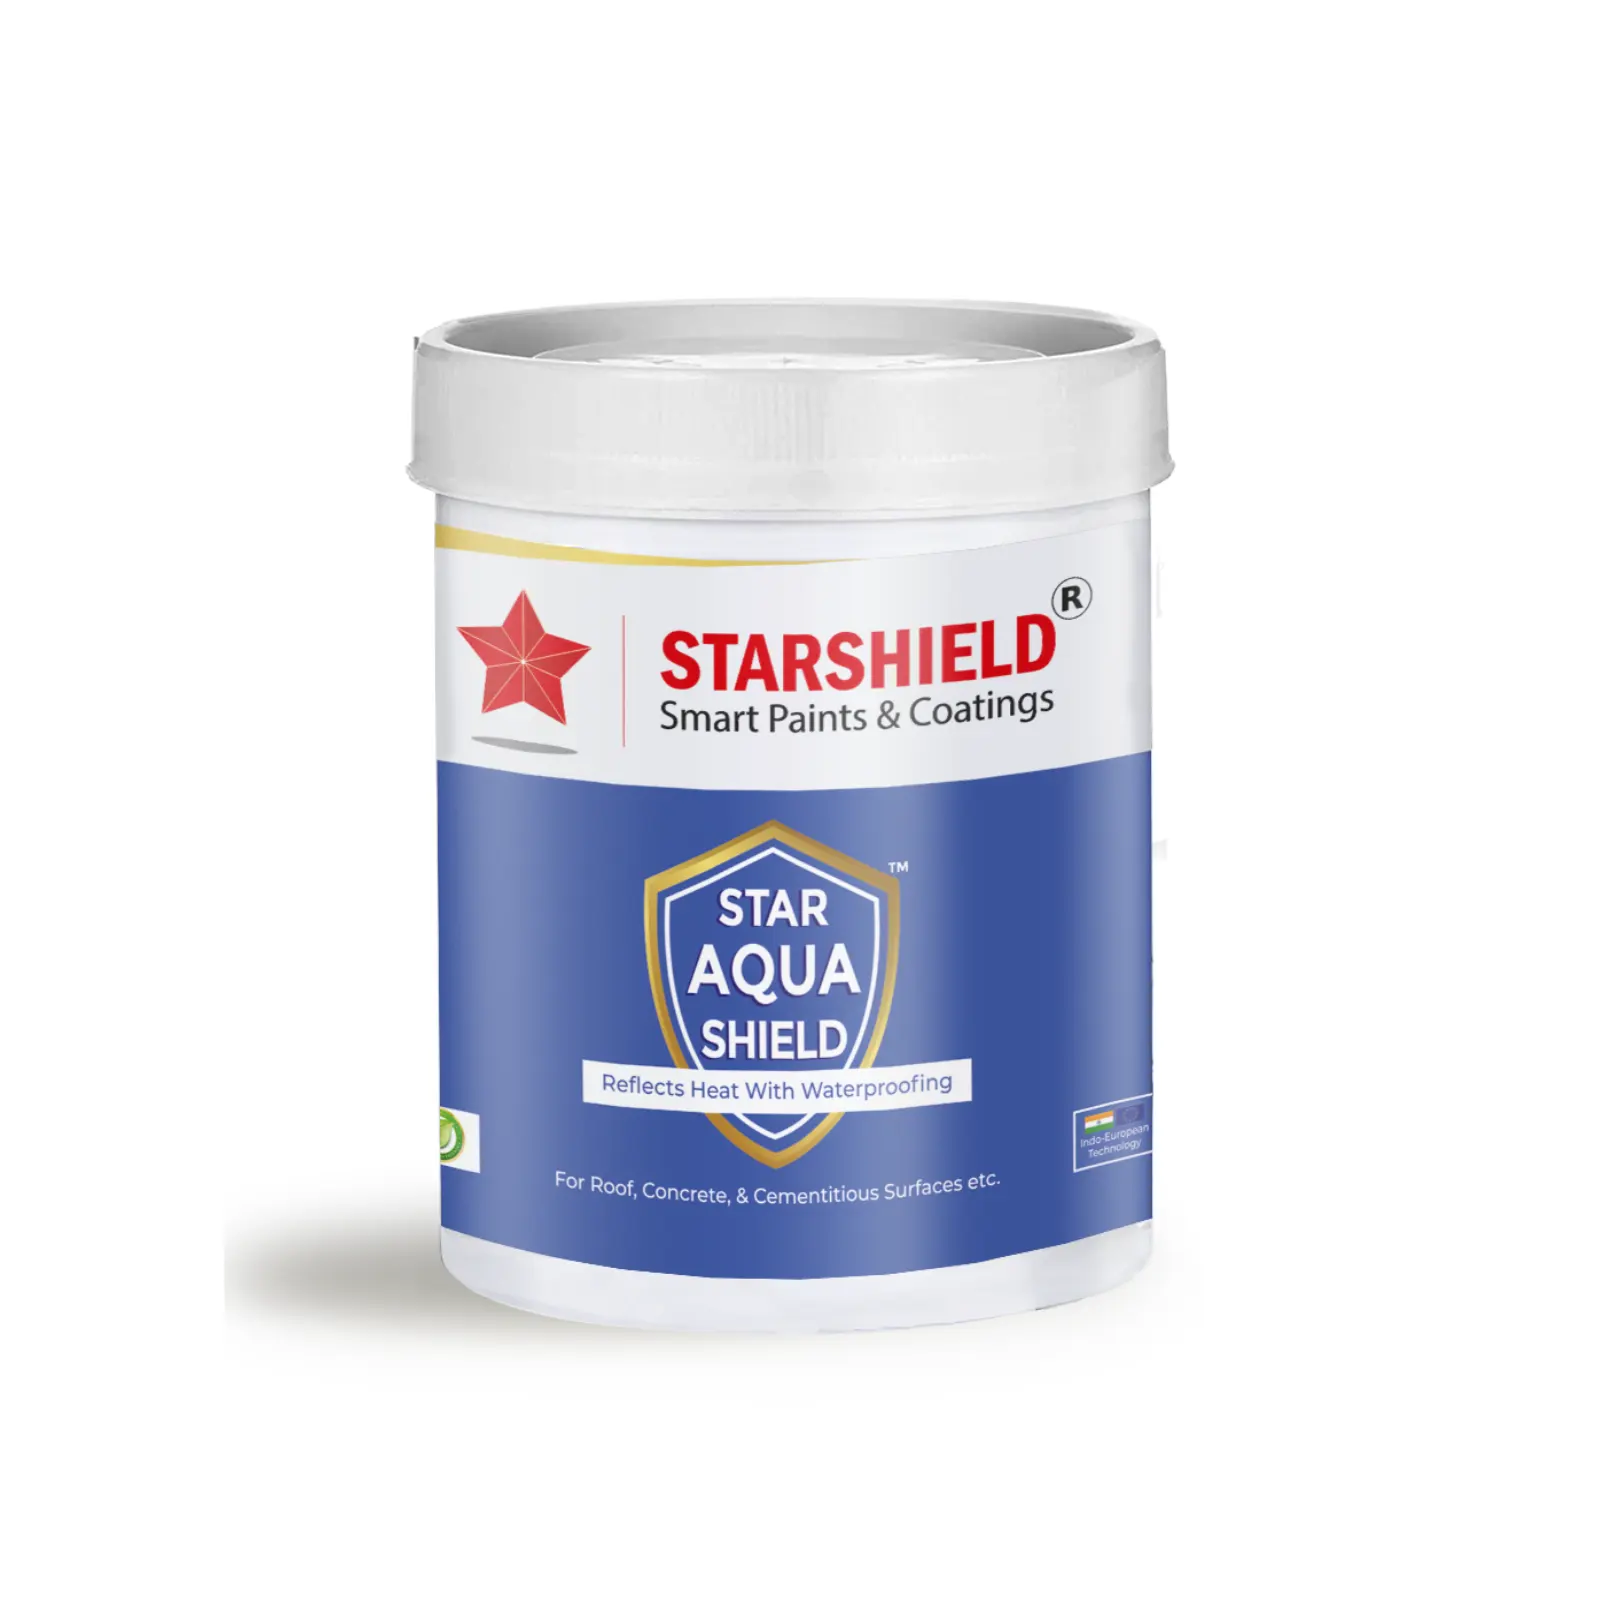 Compre el revestimiento impermeabilizante Star Aqua Shield con base de agua para uso en tejados Recubrimiento Paquete de varios tamaños disponible